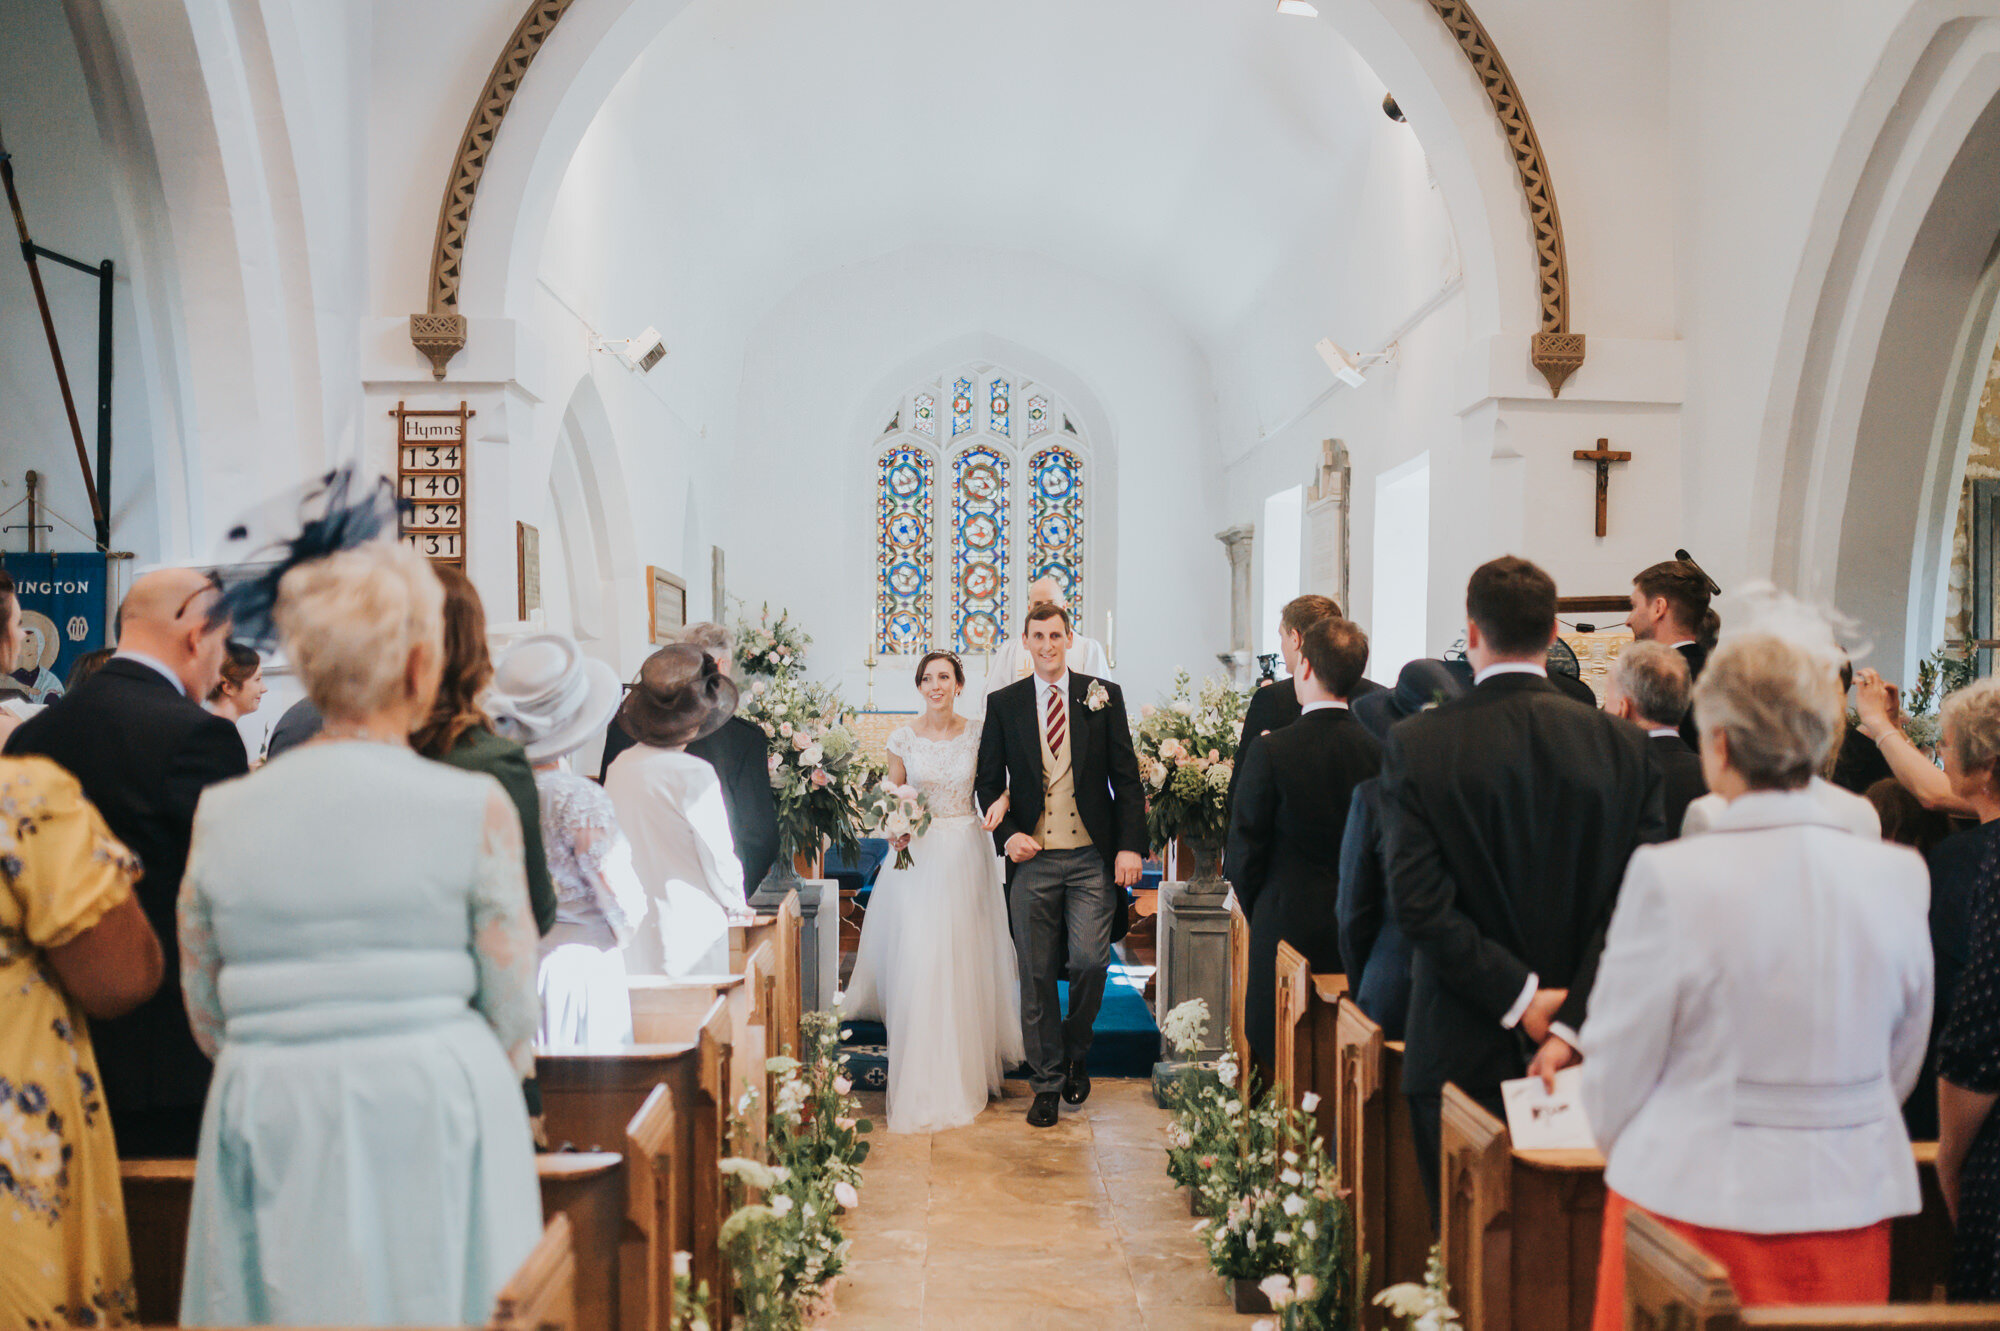 wellington-barn-wedding-photographer-wiltshire-16.jpg